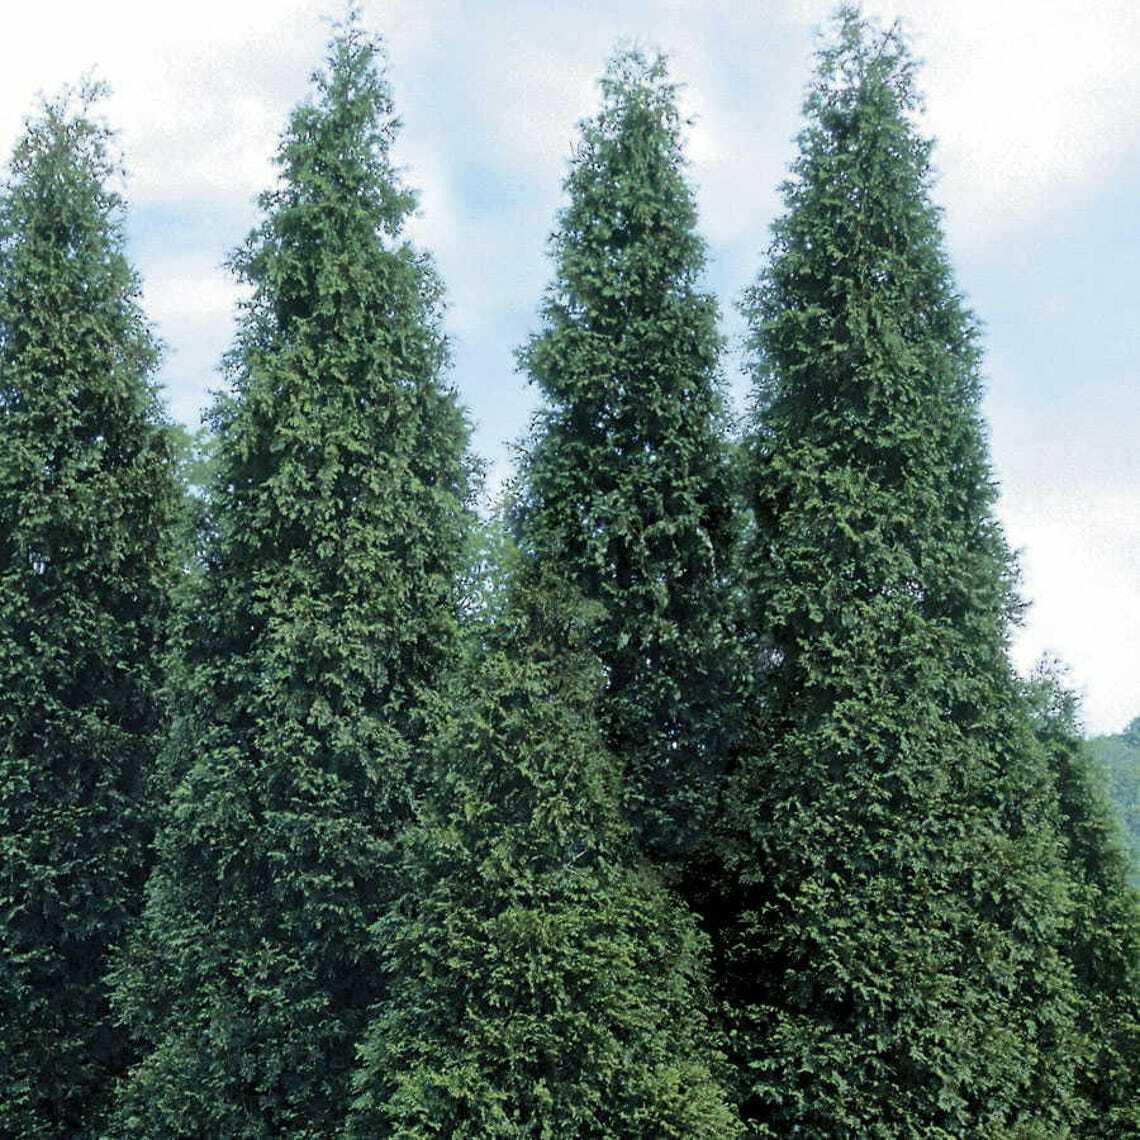 20 Thuja Green Giant Arborvitae Trees/Shrubs/Bushes - 6-12" Tall Seedlings - Live Plants - 2.5" Pots - The Nursery Center